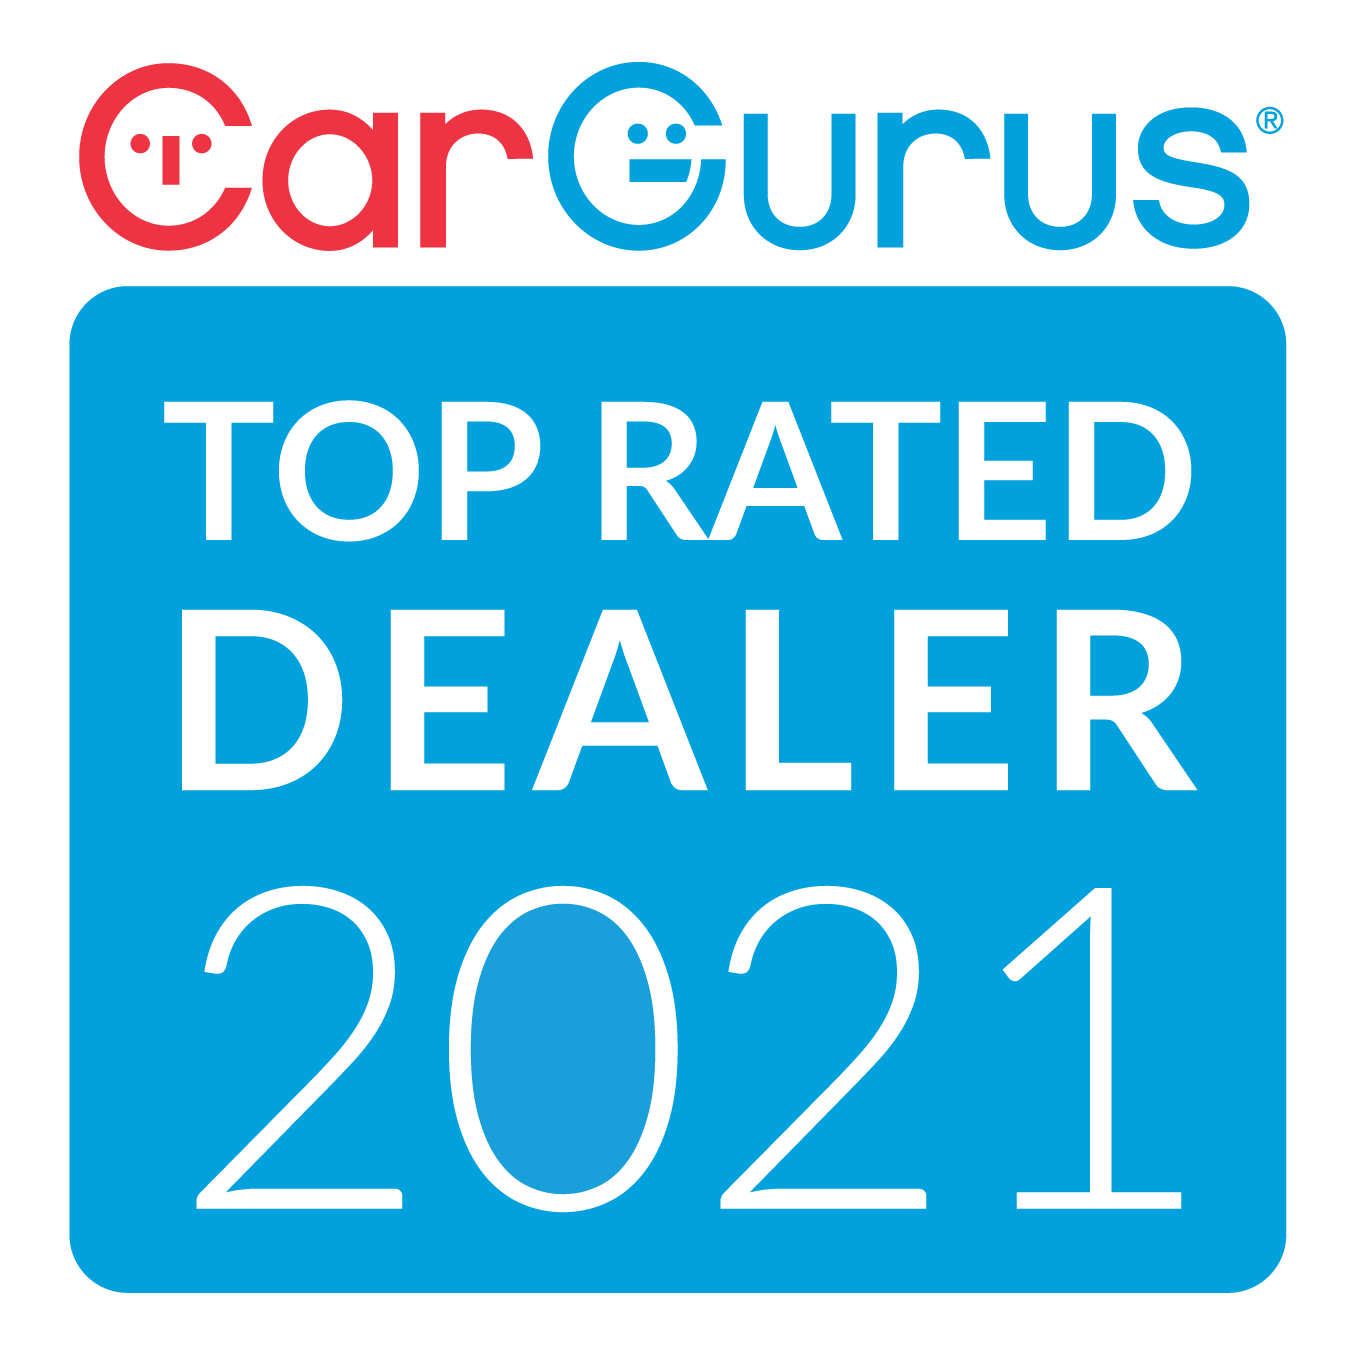 Car Gurus Top Rated Dealer 2021 Award